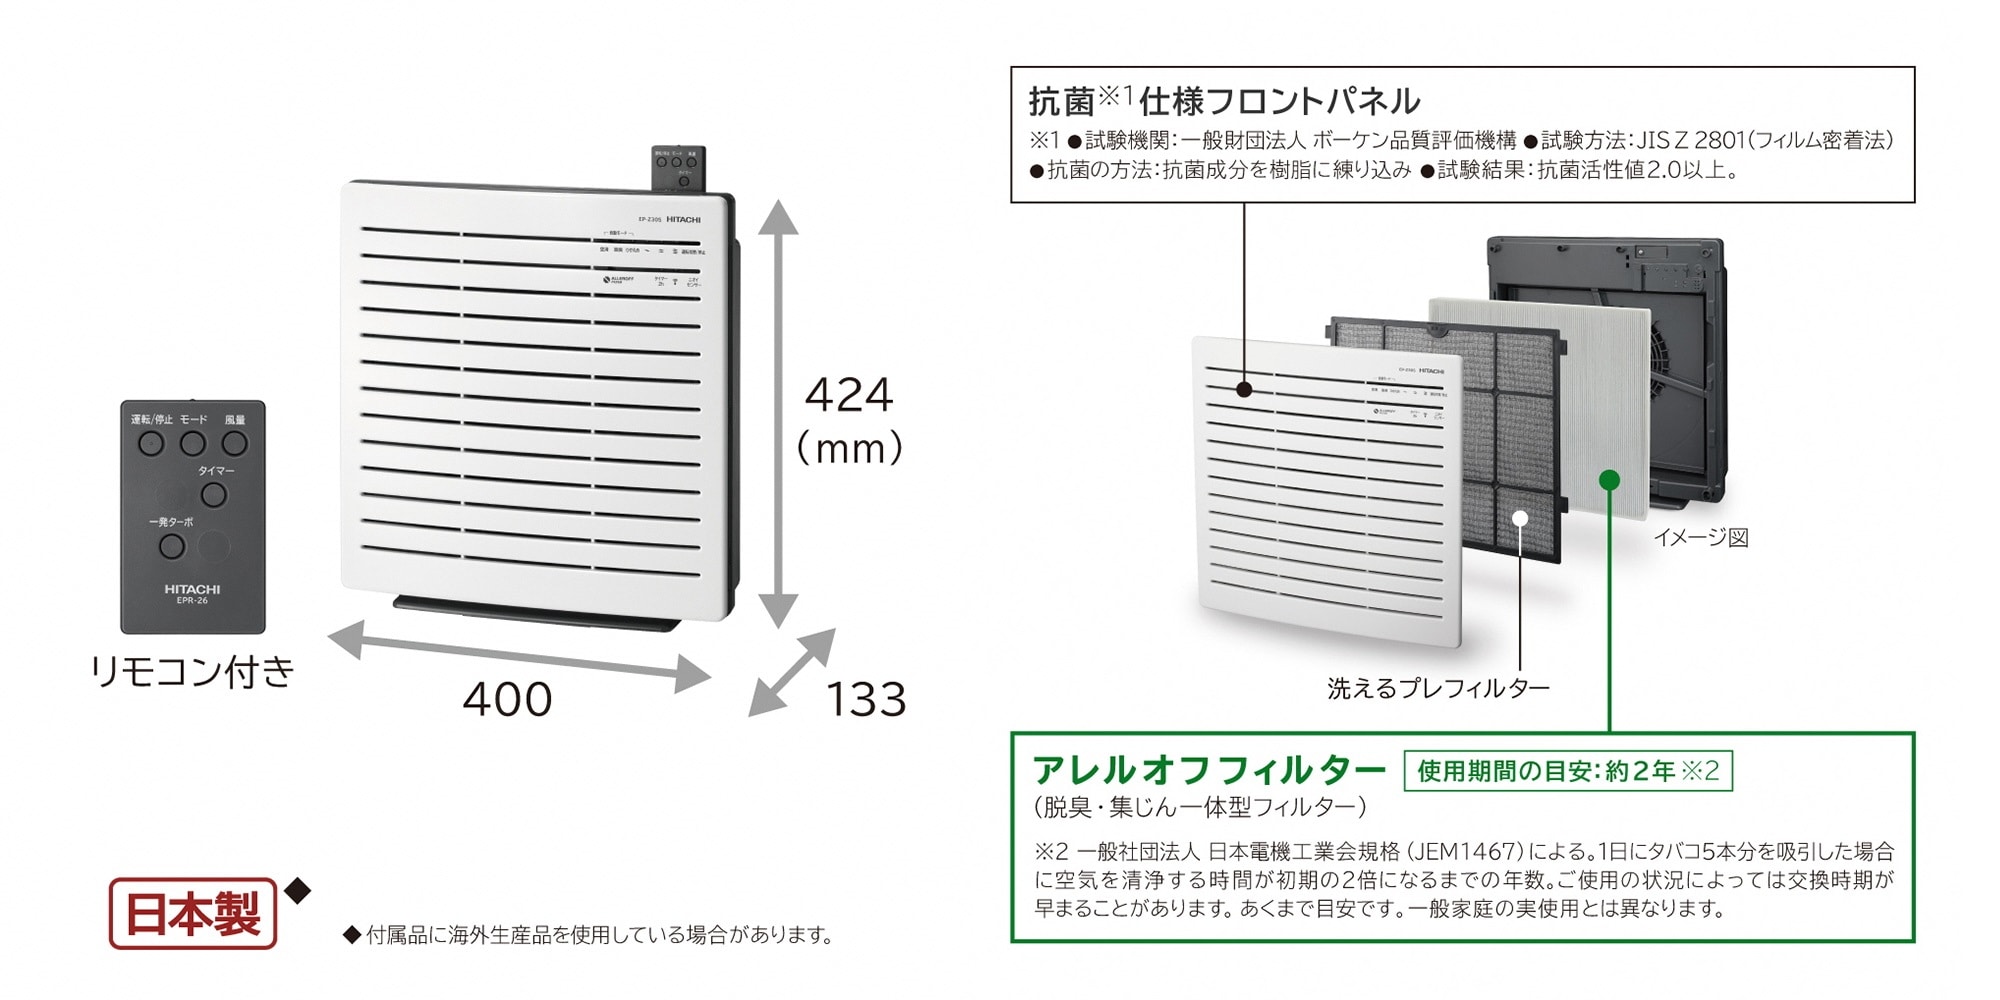 日立 HITACHI EP-Z30S W [空気清浄機 クリエア ホワイト] - 空気清浄器